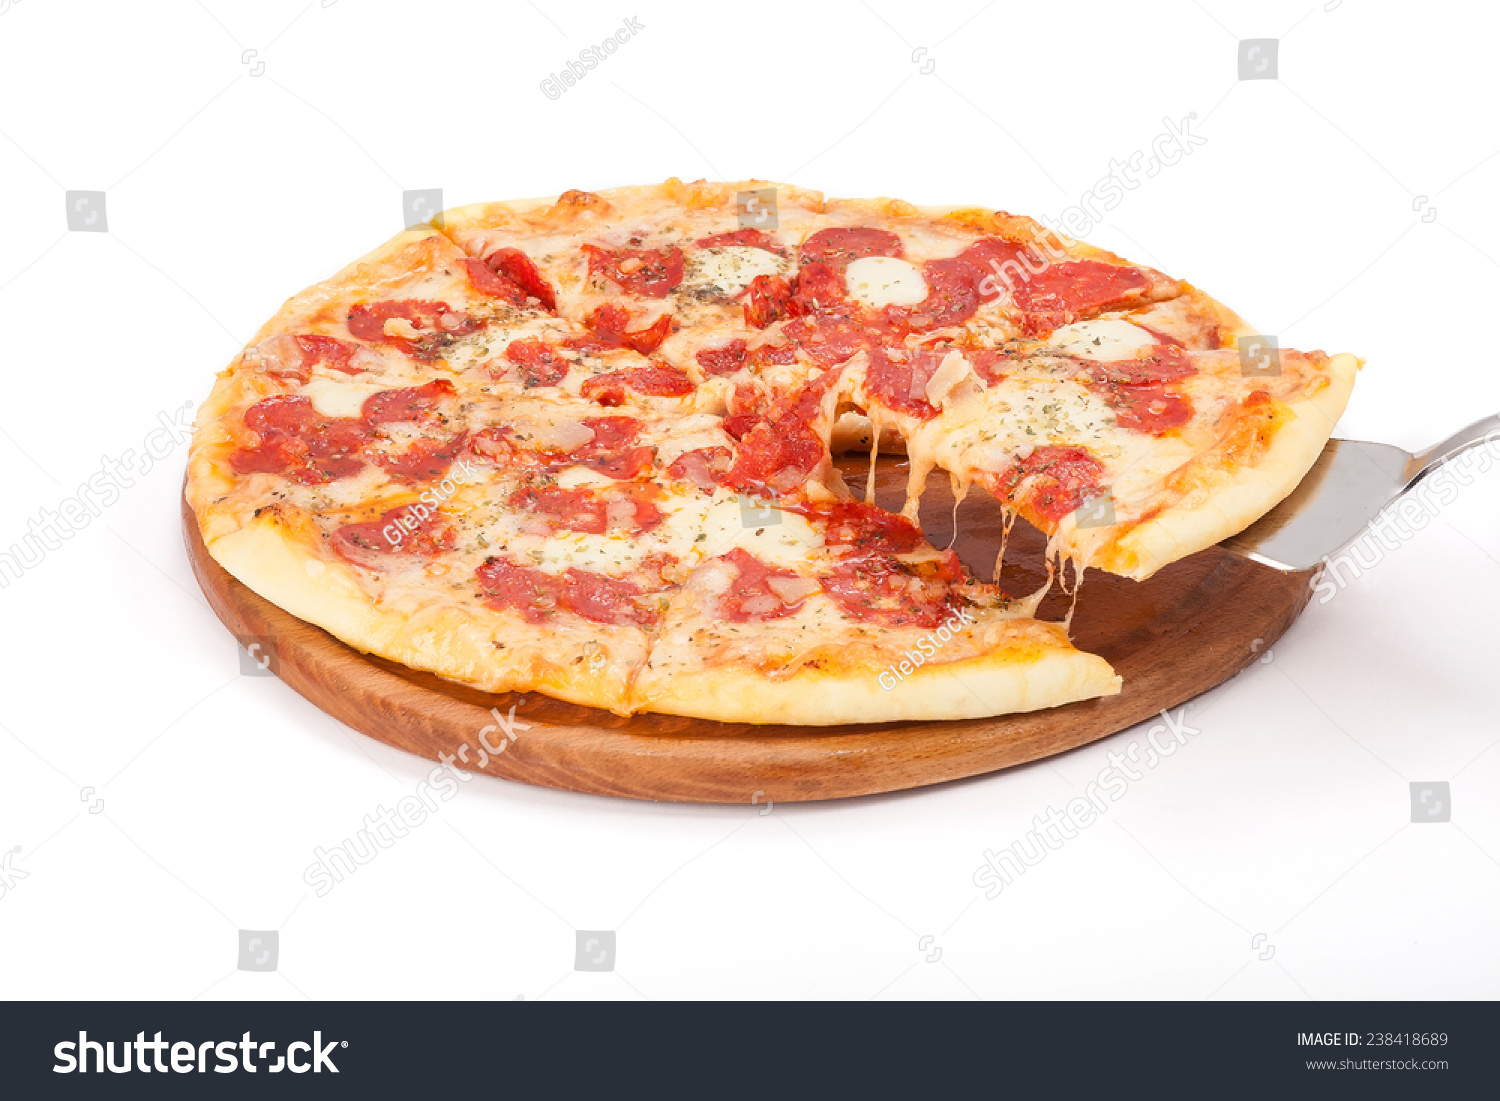 рецепт приготовления пиццы с колбасой и сыром в домашних условиях фото 95